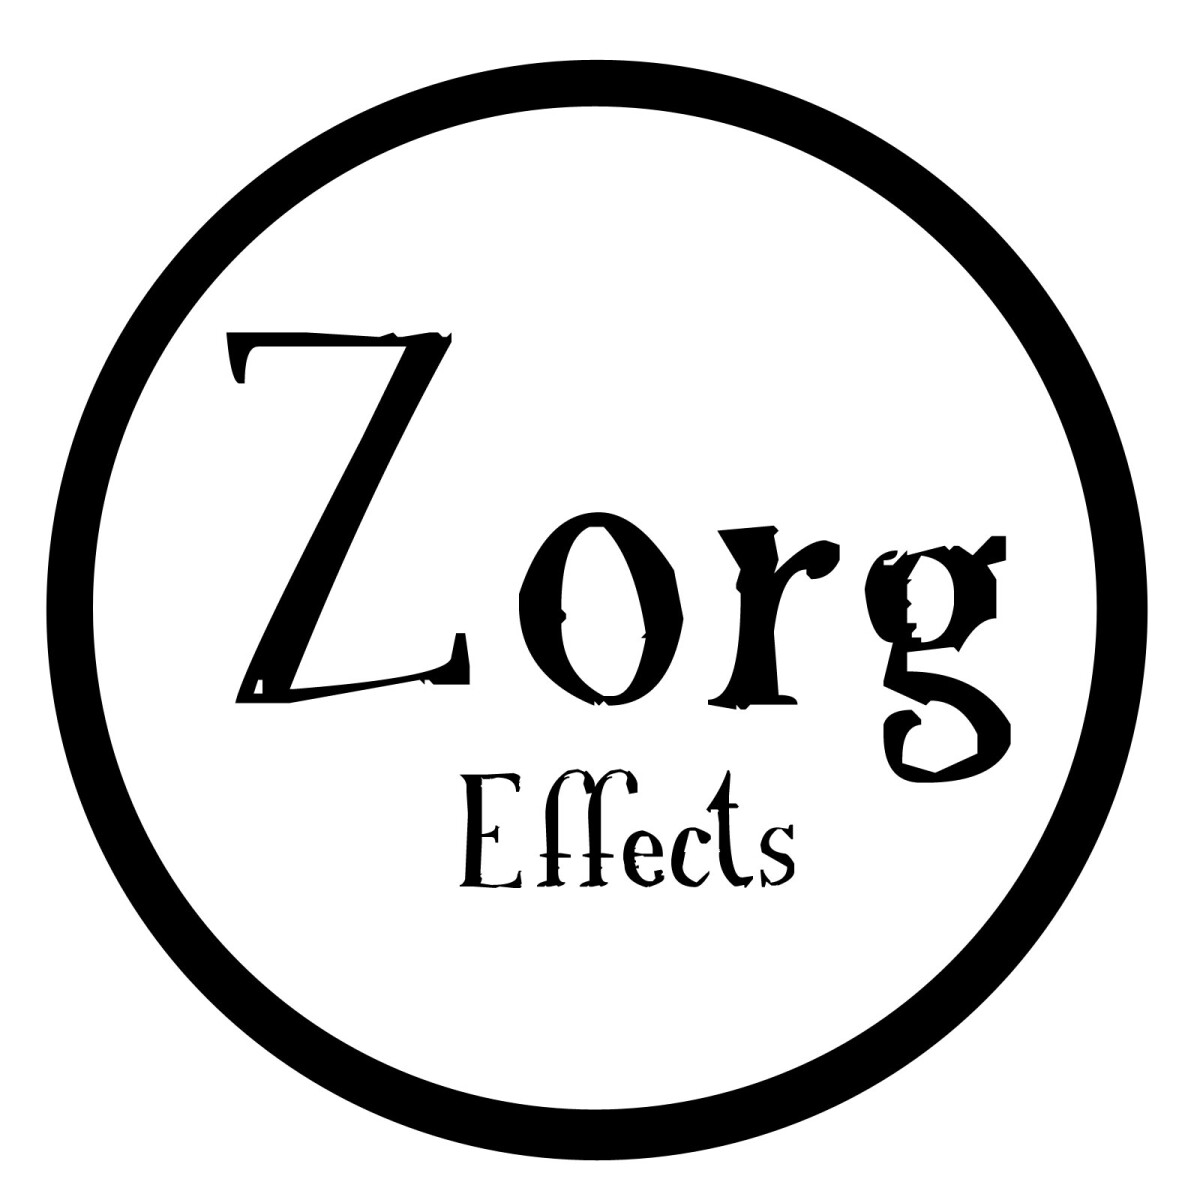 Zorg Effects financé avec succès sur Ulule